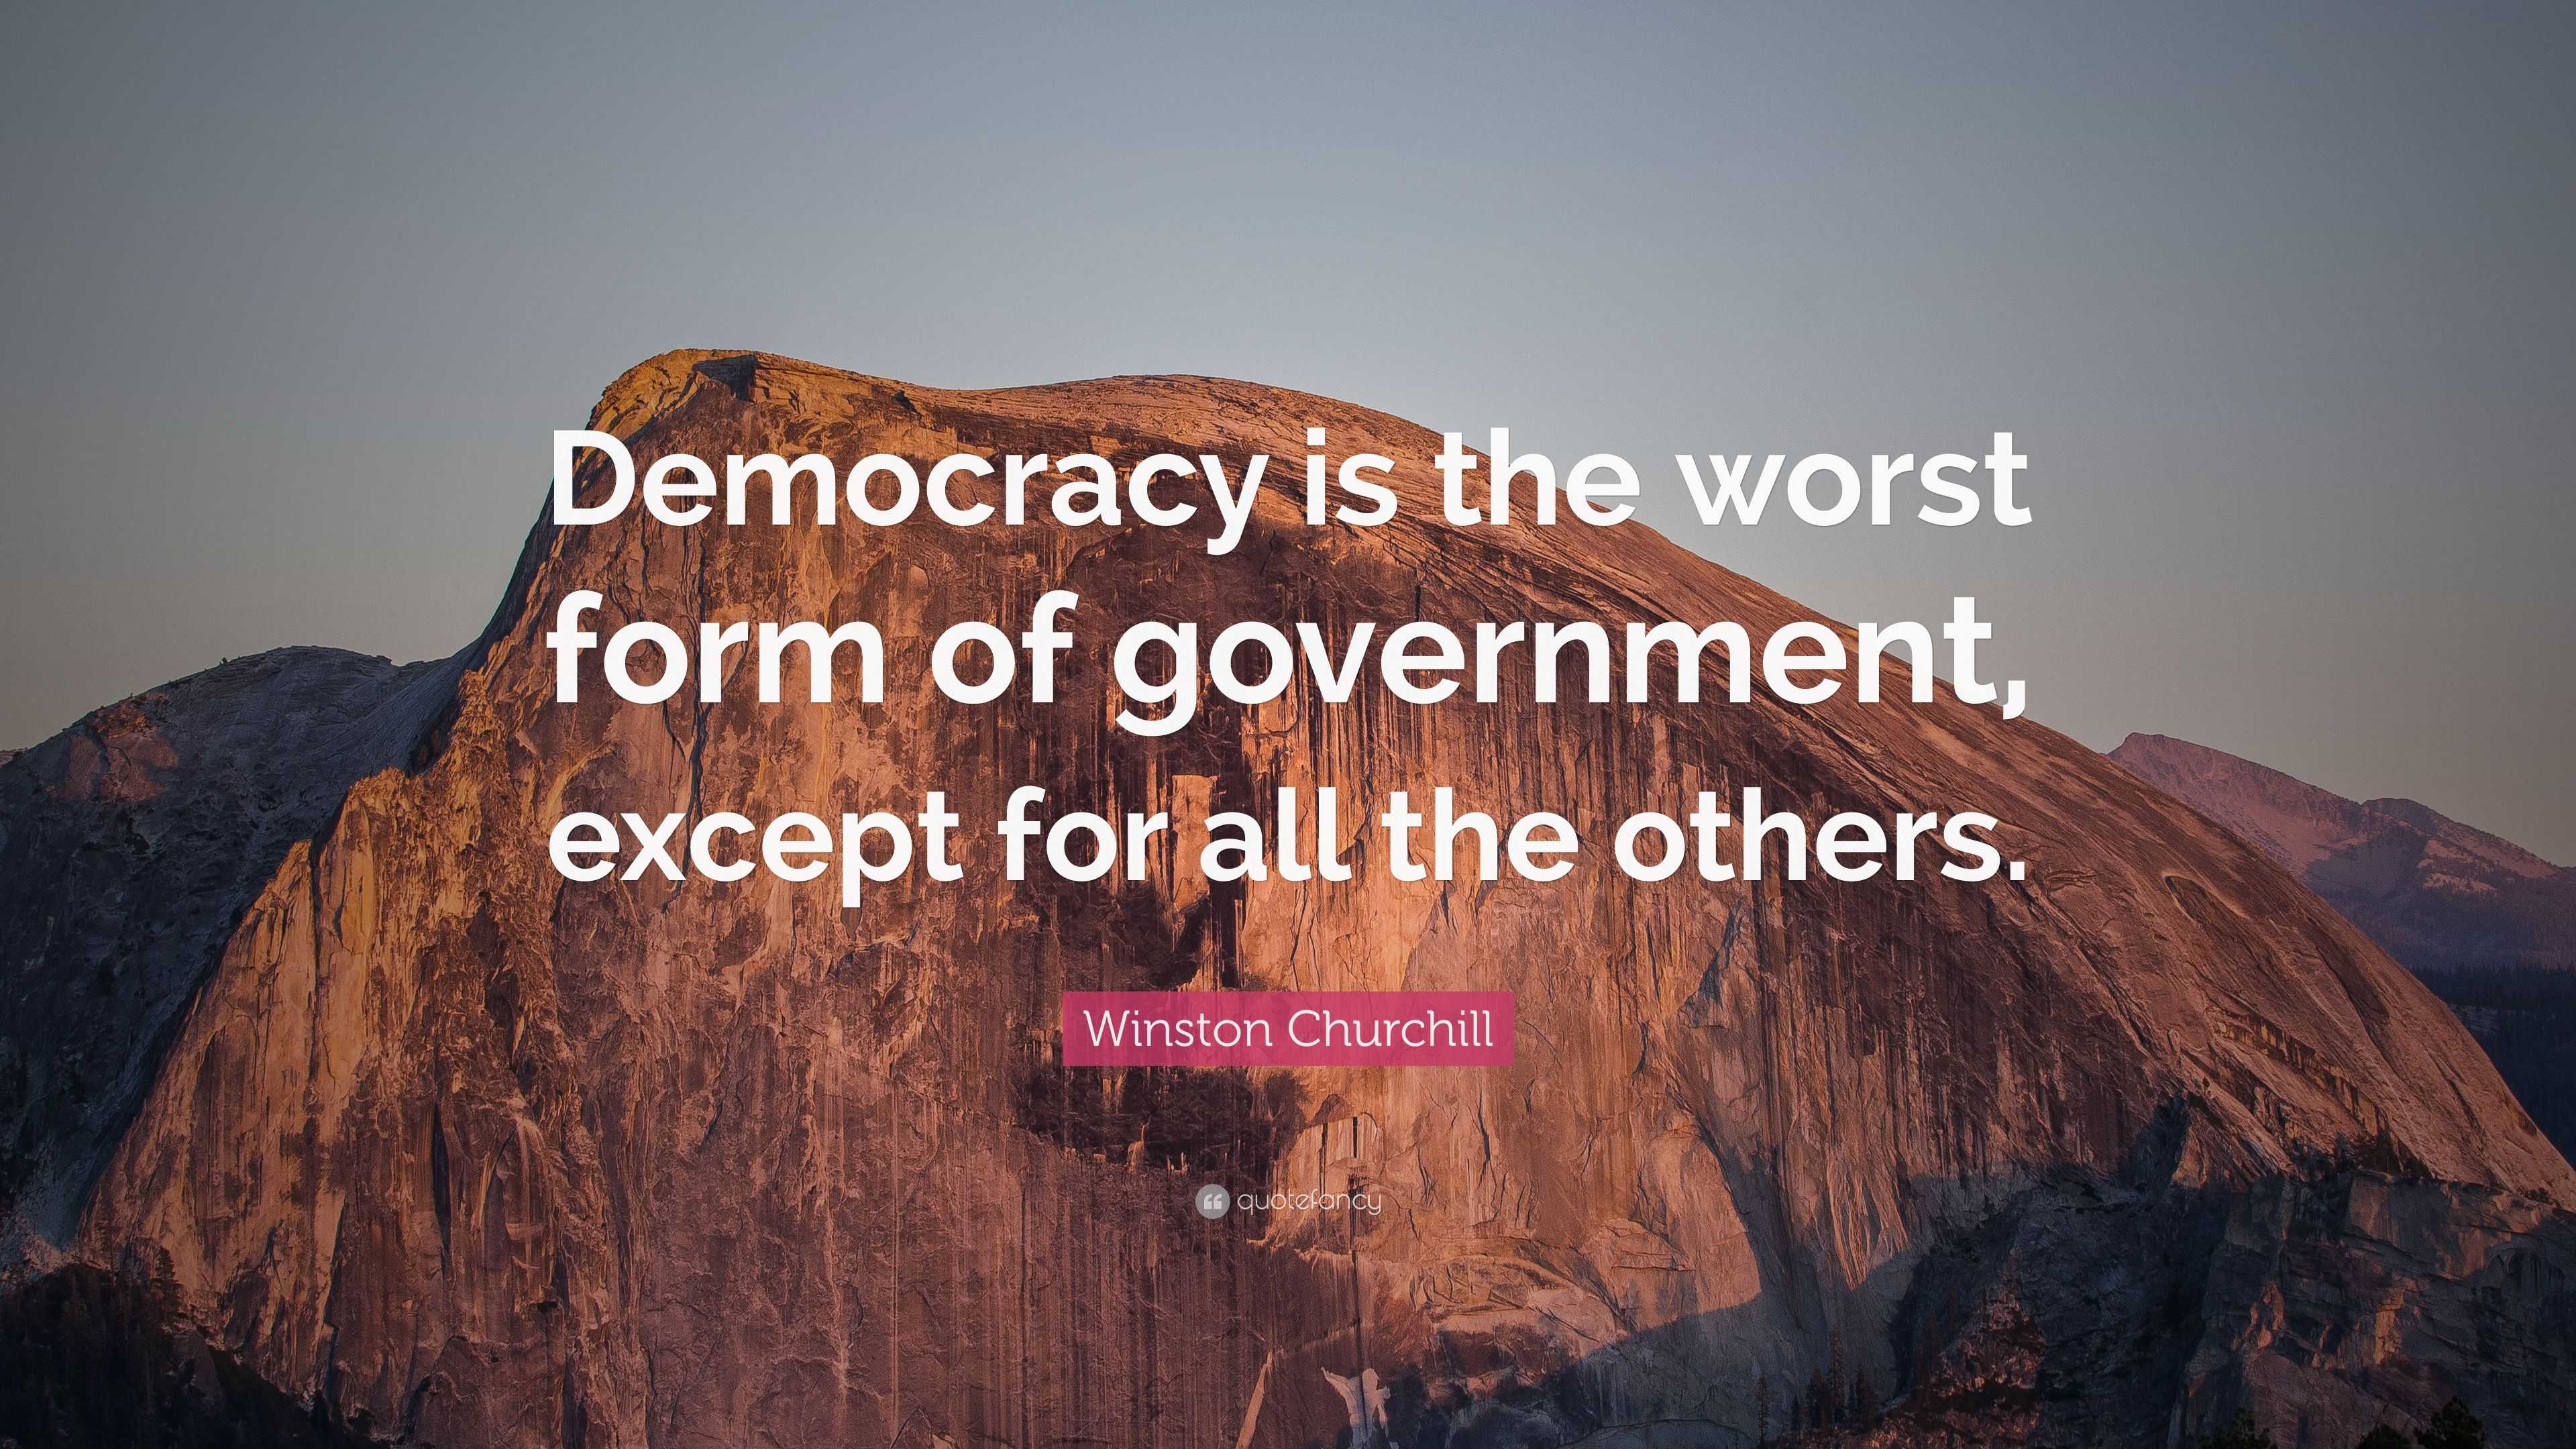 democracy 3 quotes